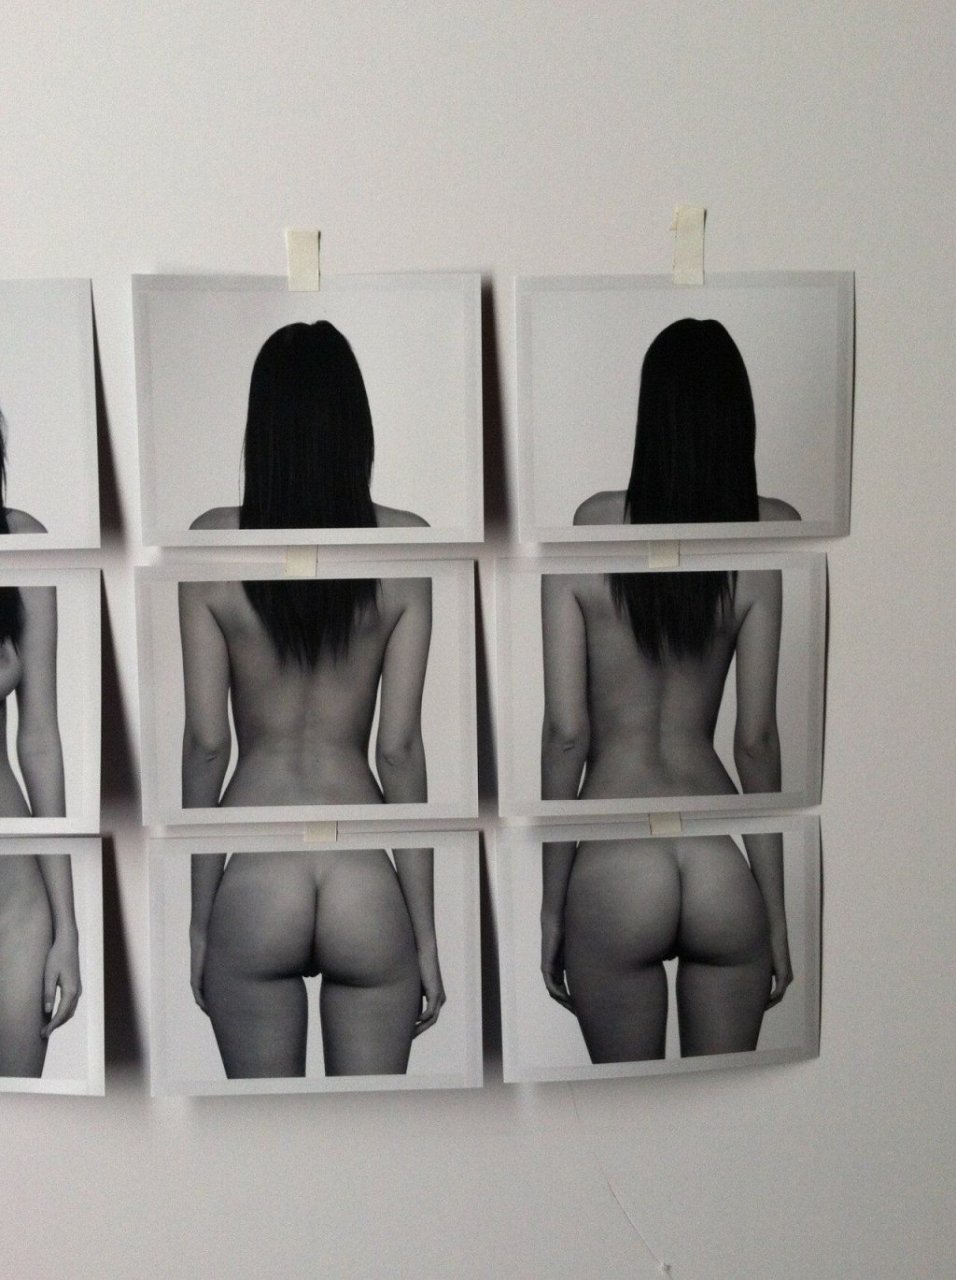 Emily Ratajkowski Naked Pictures